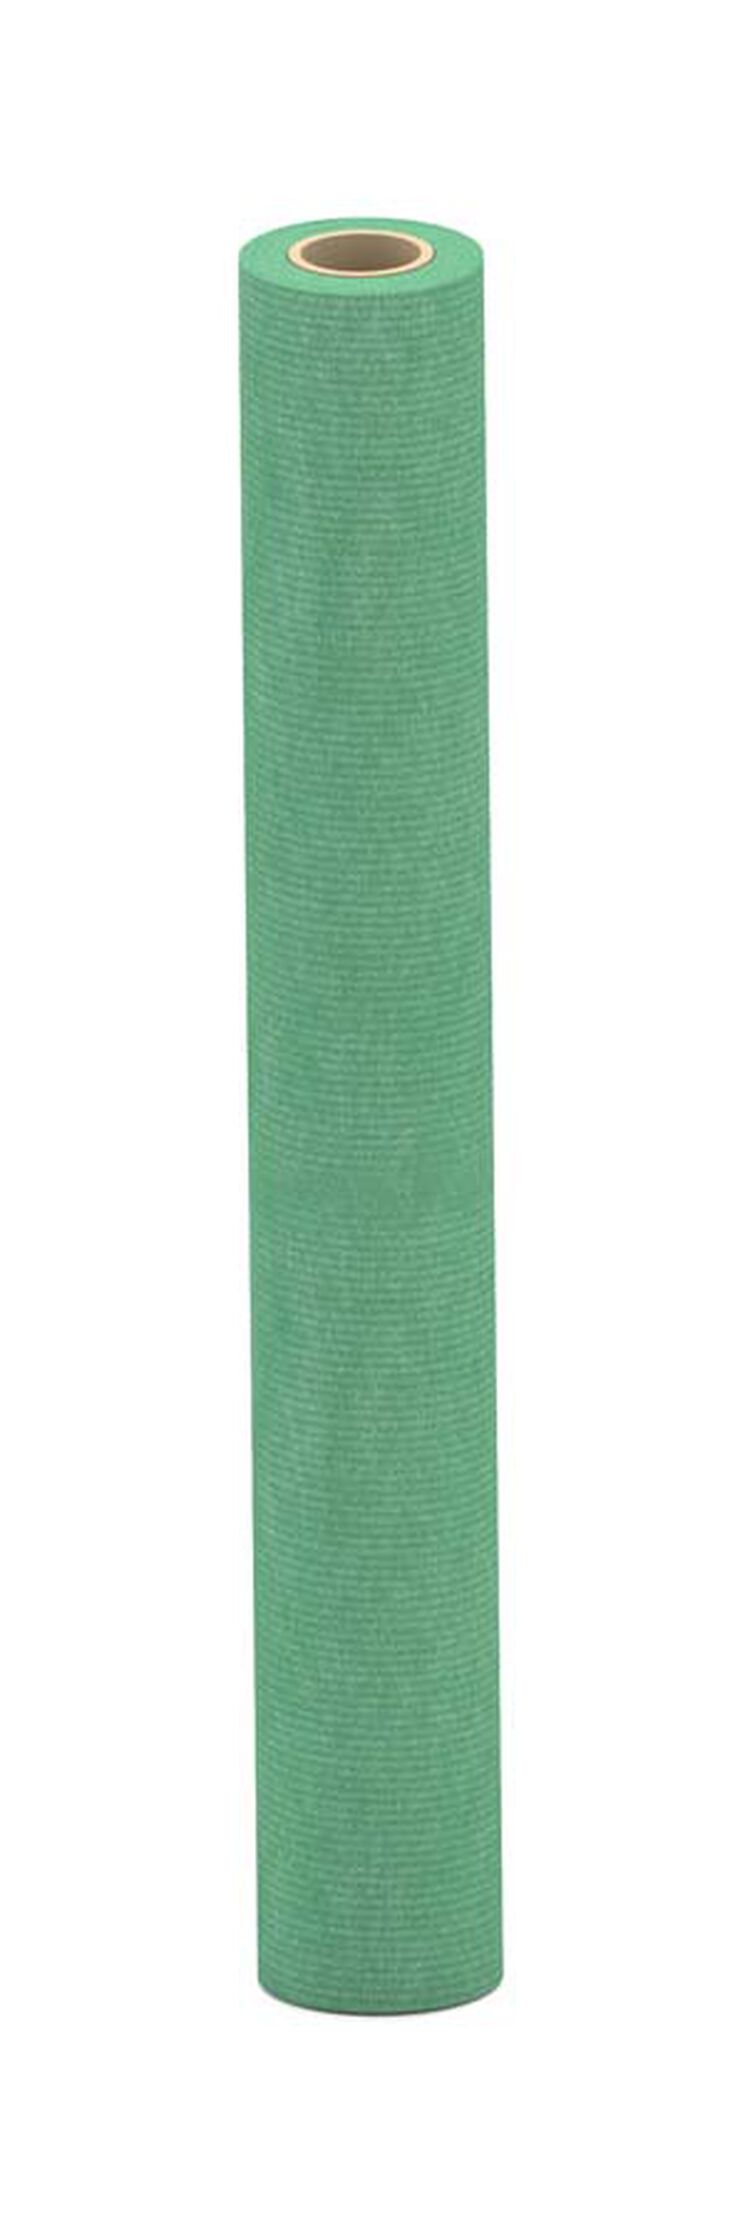 Bobina de papel kraft Sadipal 1x25m 90g verde malaquita